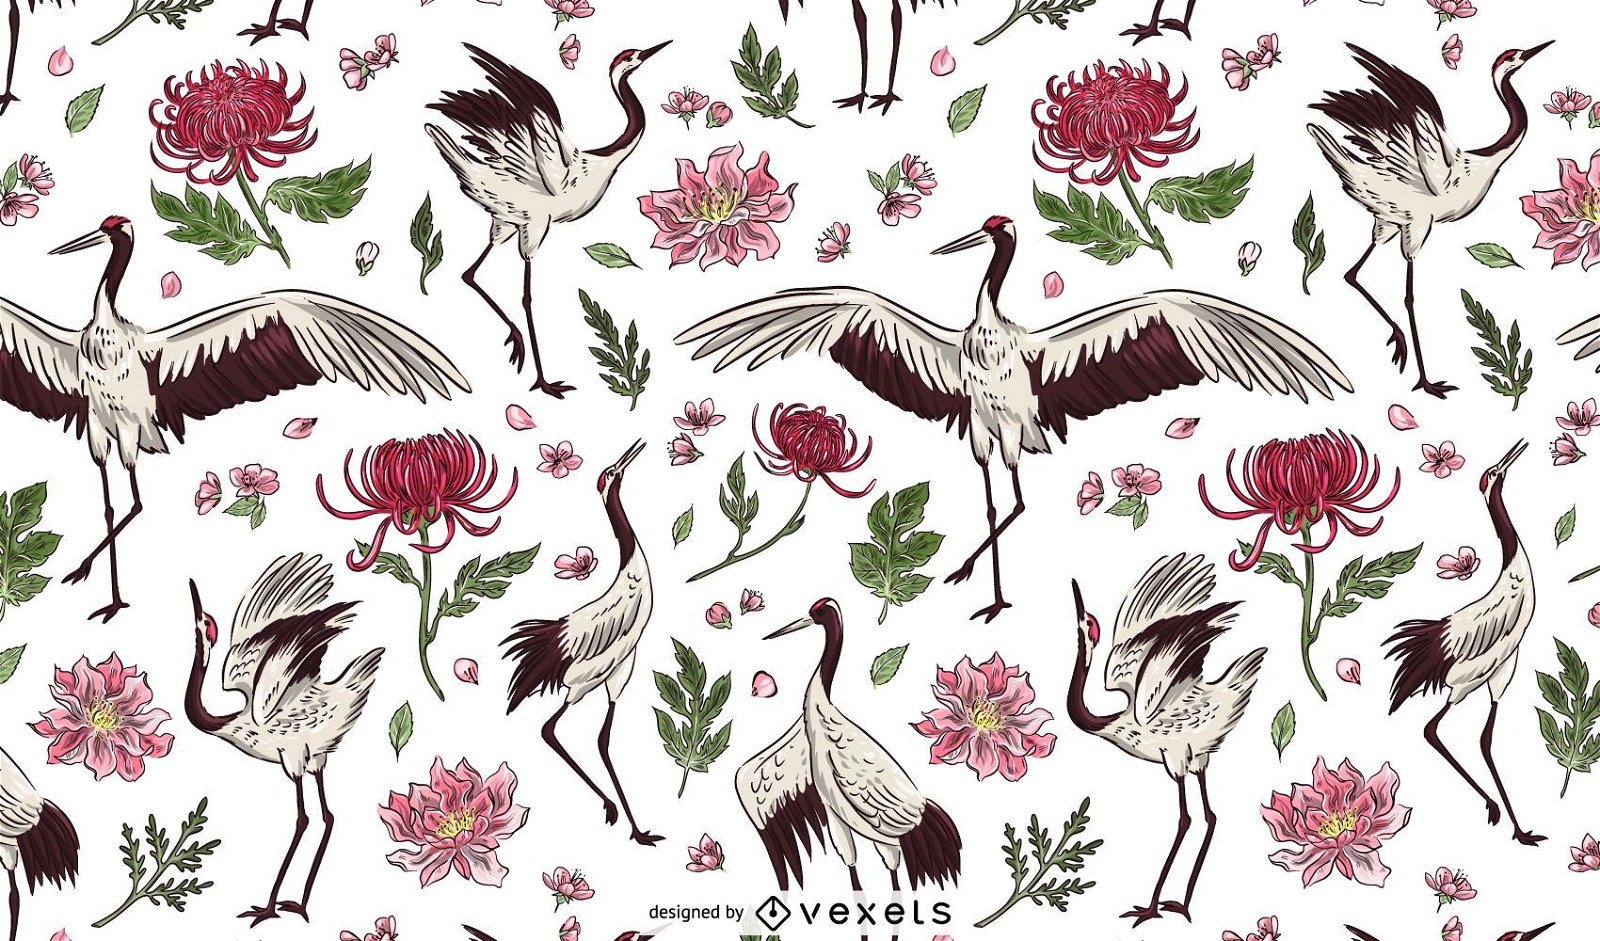 Crane bird floral pattern design